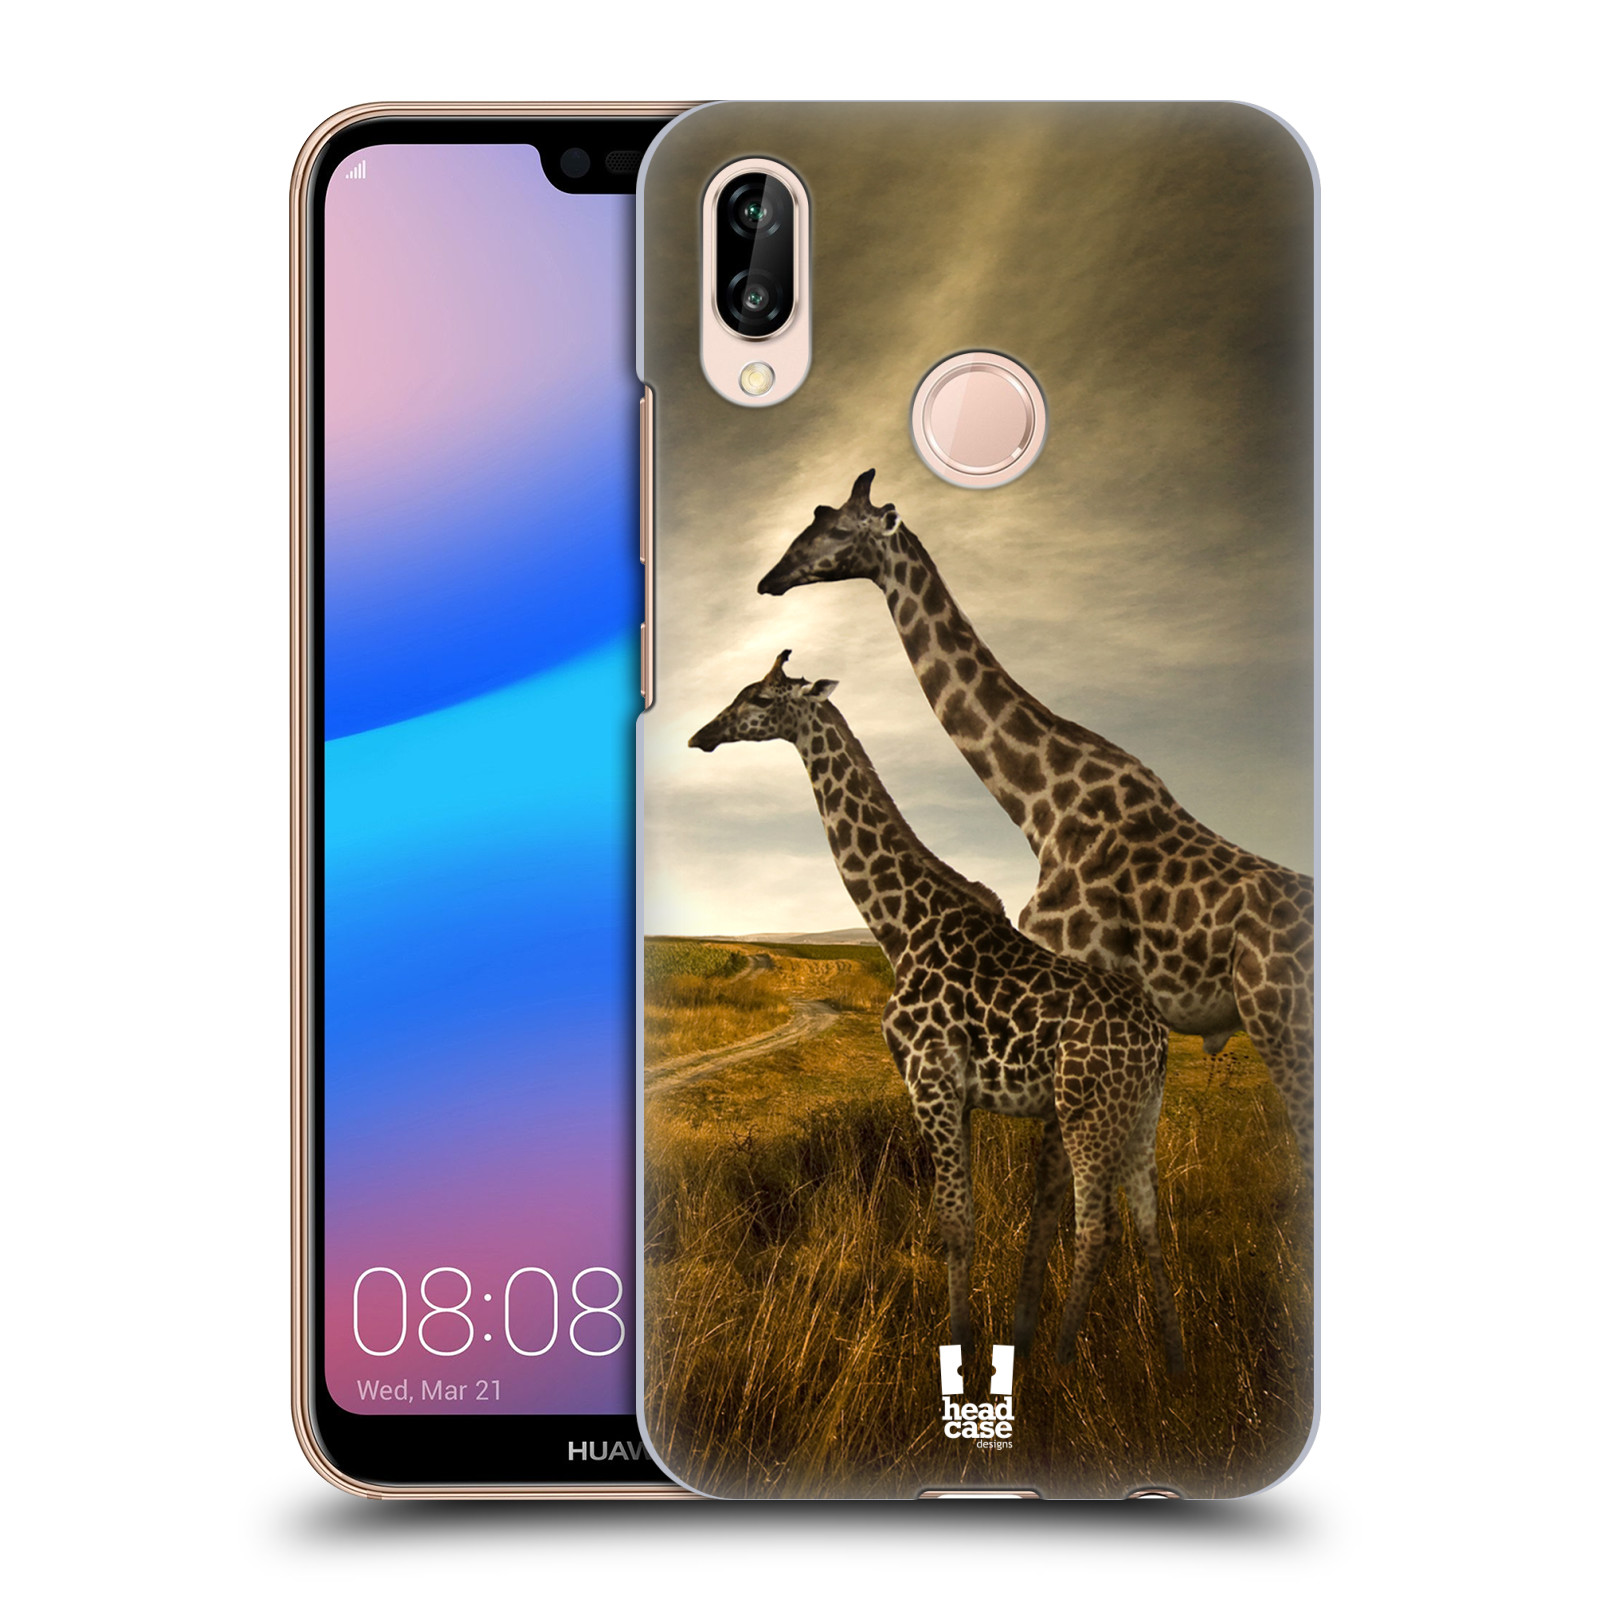 Zadní obal pro mobil Huawei P20 LITE - HEAD CASE - Svět zvířat žirafy